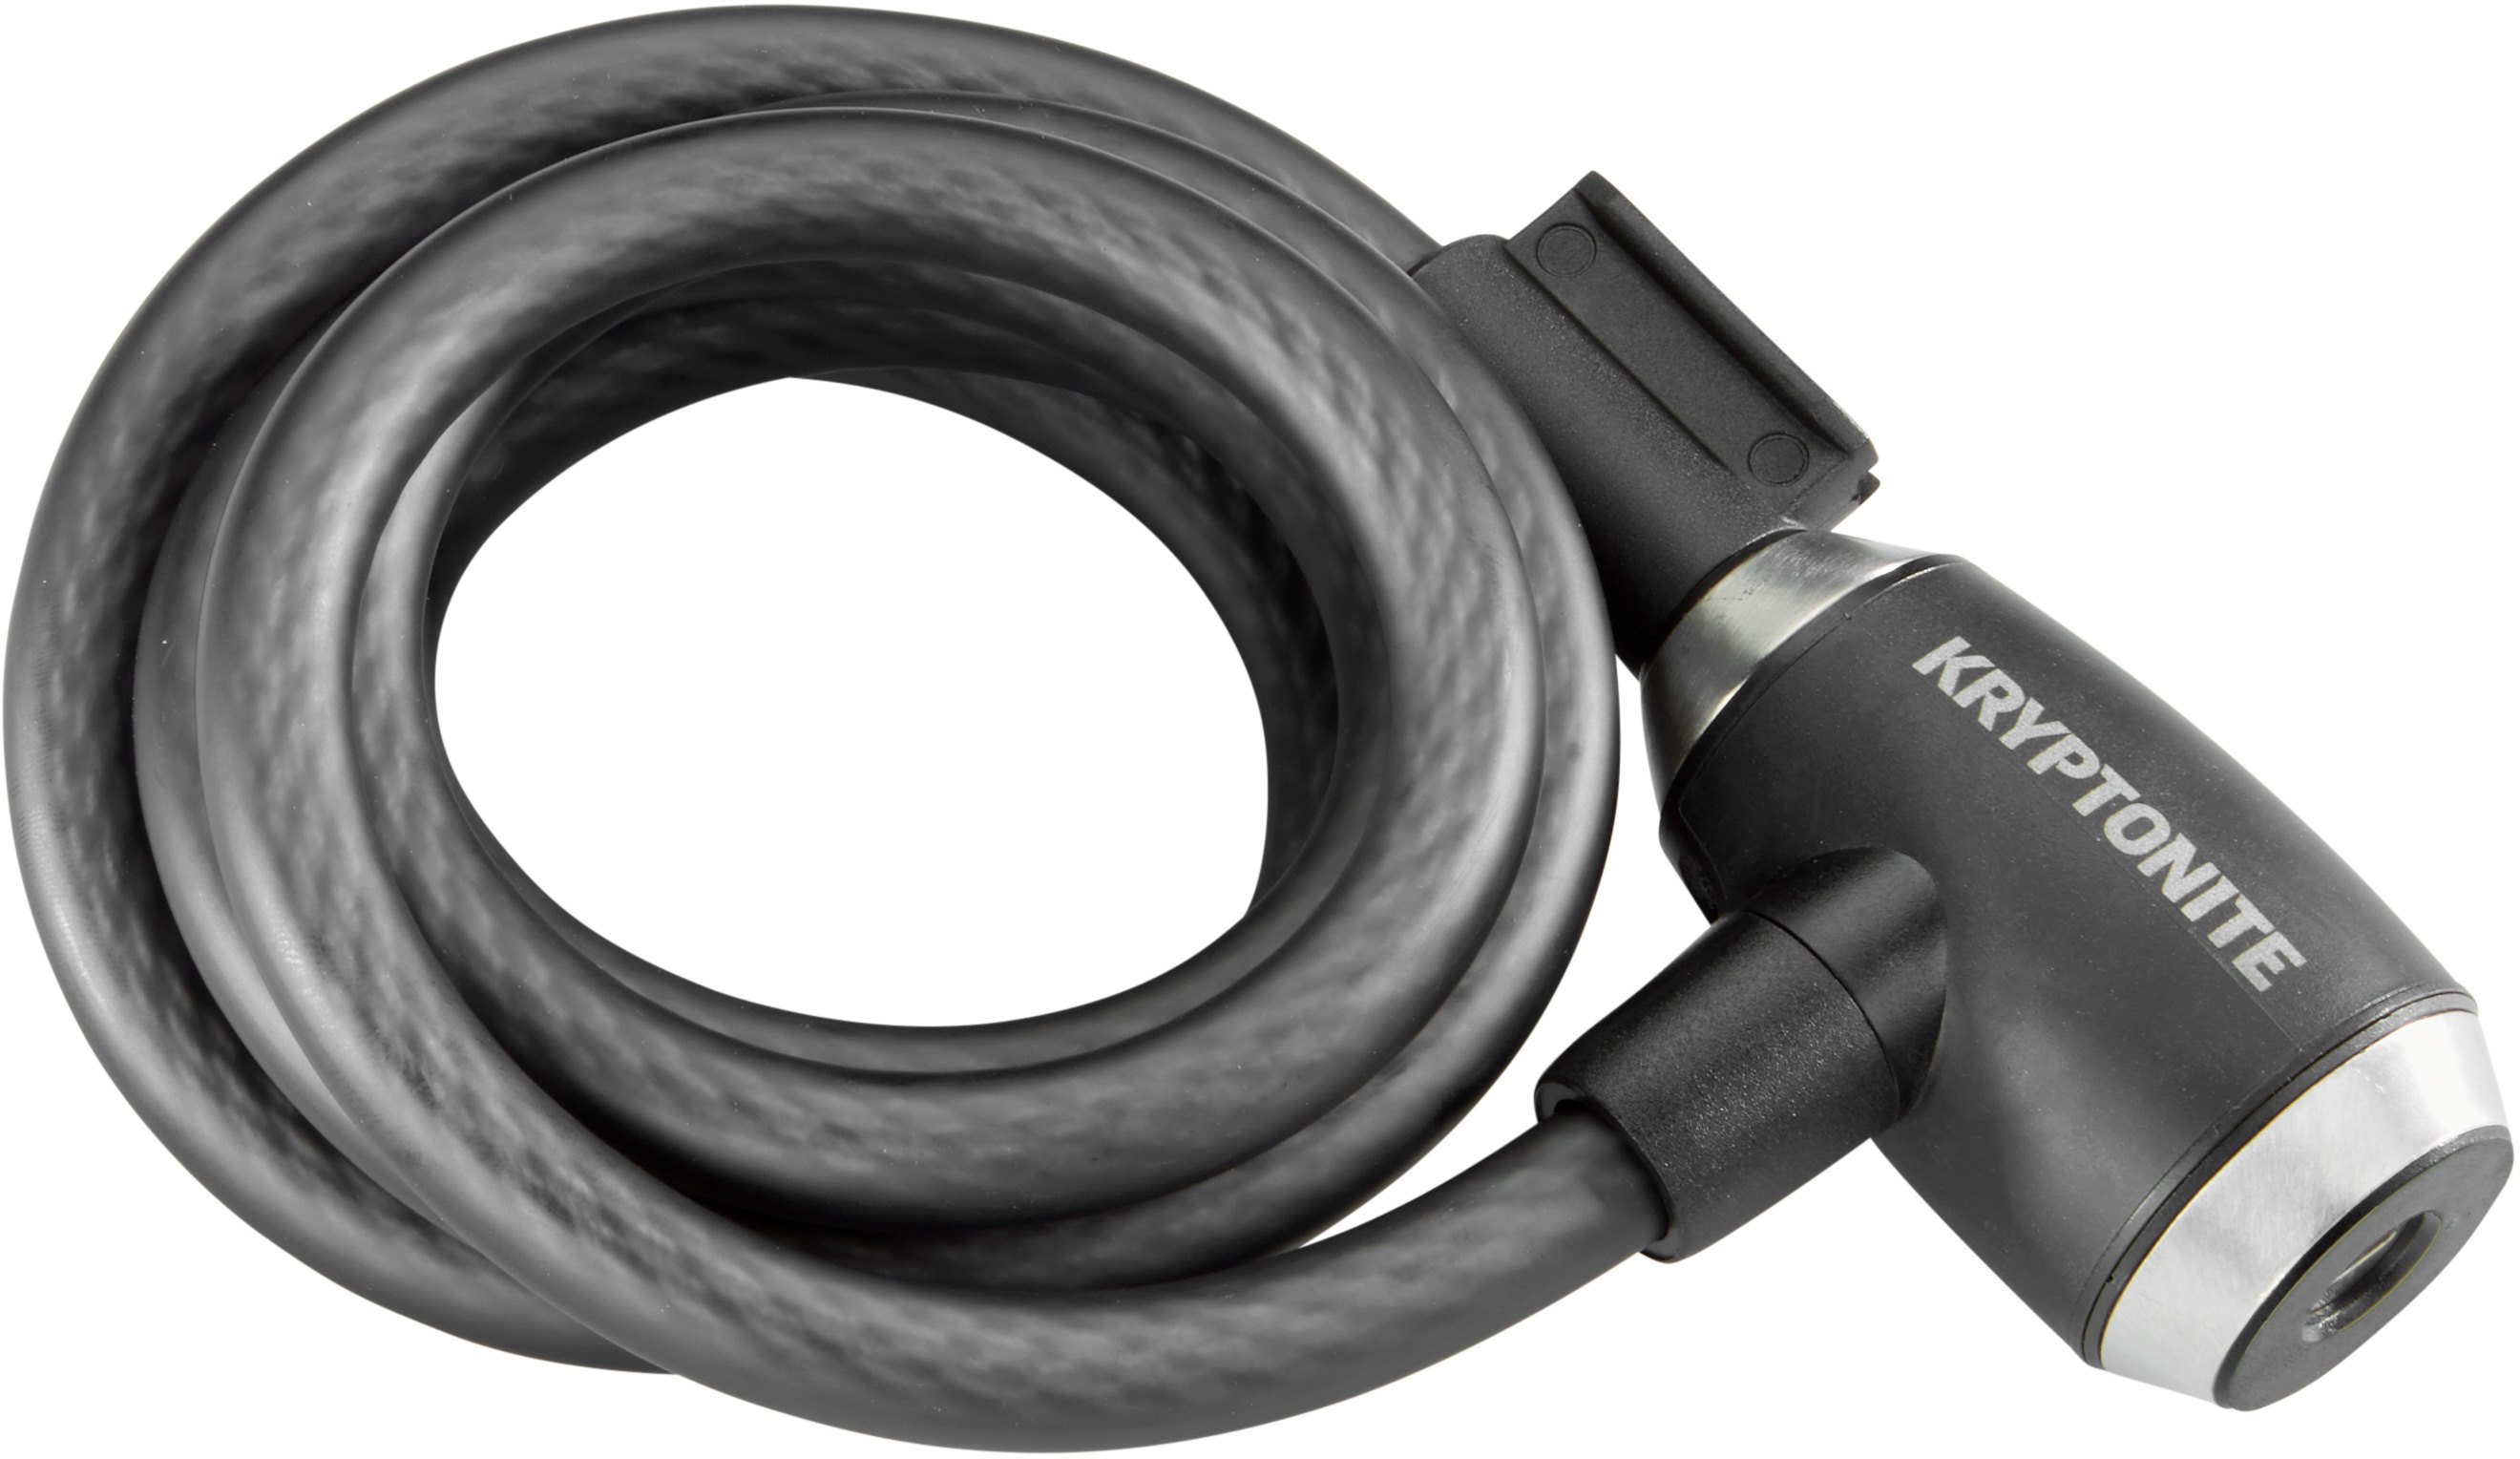 kryptoflex-1218-key-cable-12-mm-x-180-cm